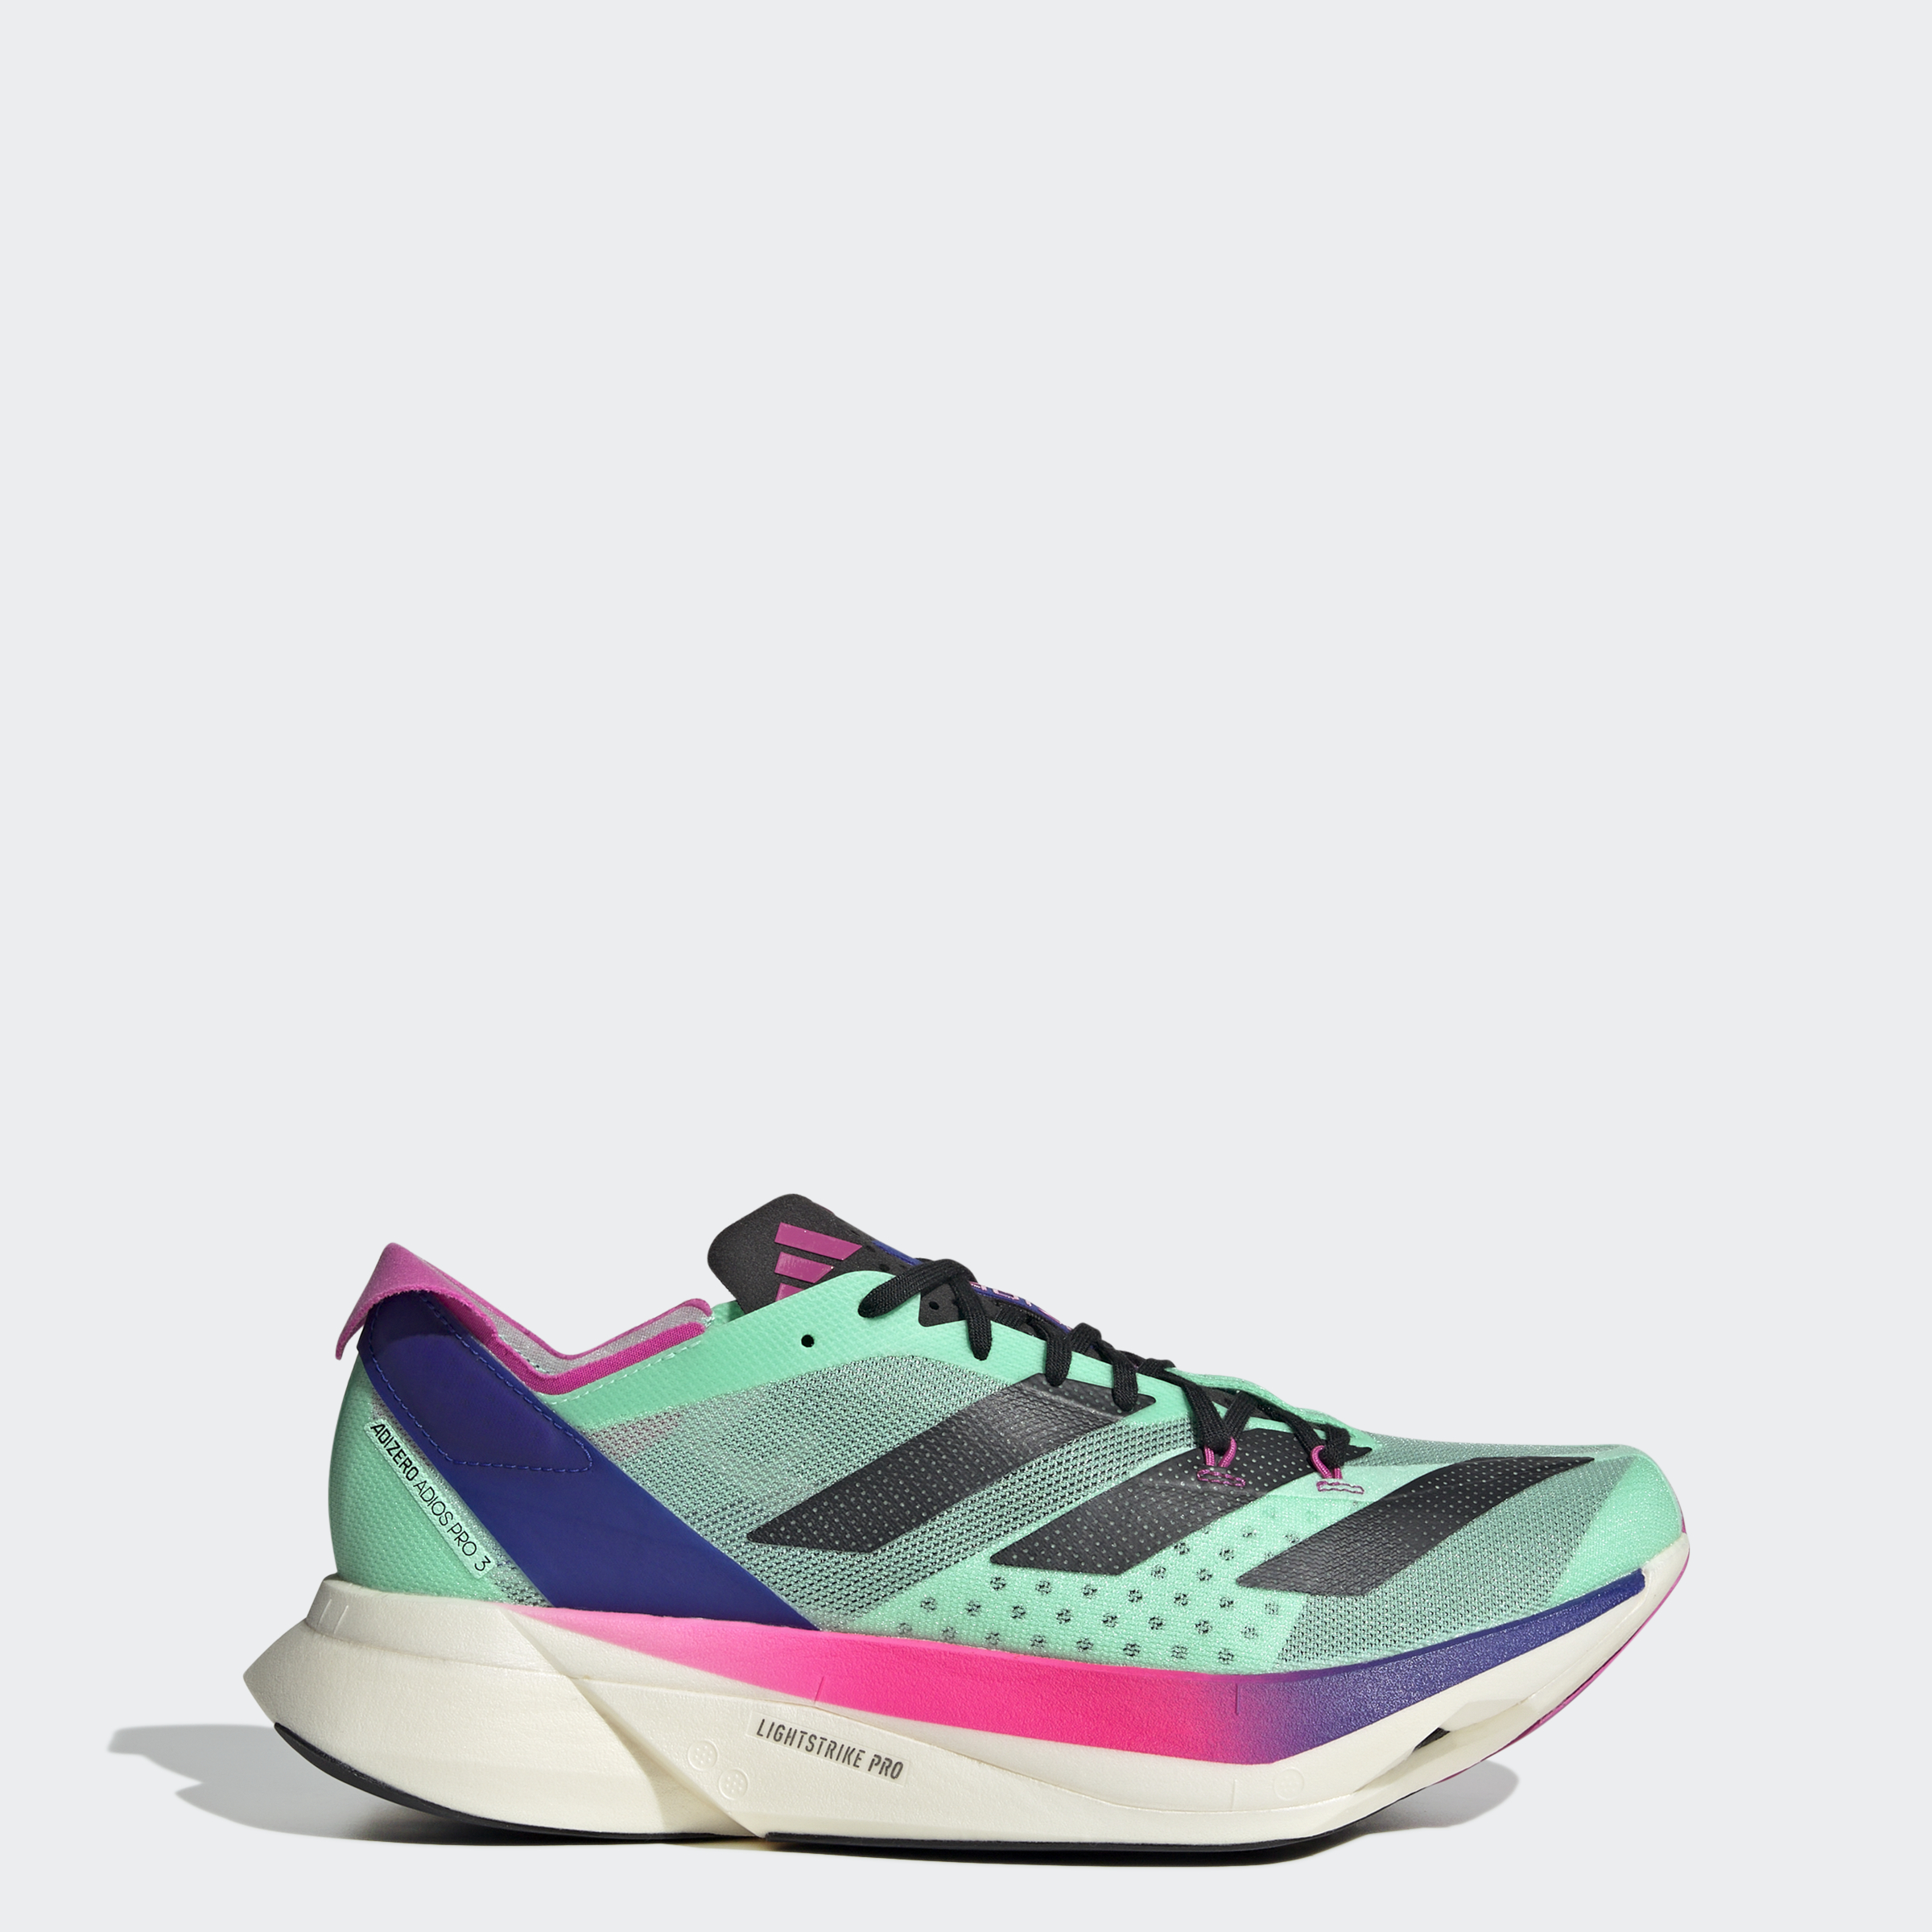 adidas Adizero Adios Pro 3 Running Shoes Men's | eBay